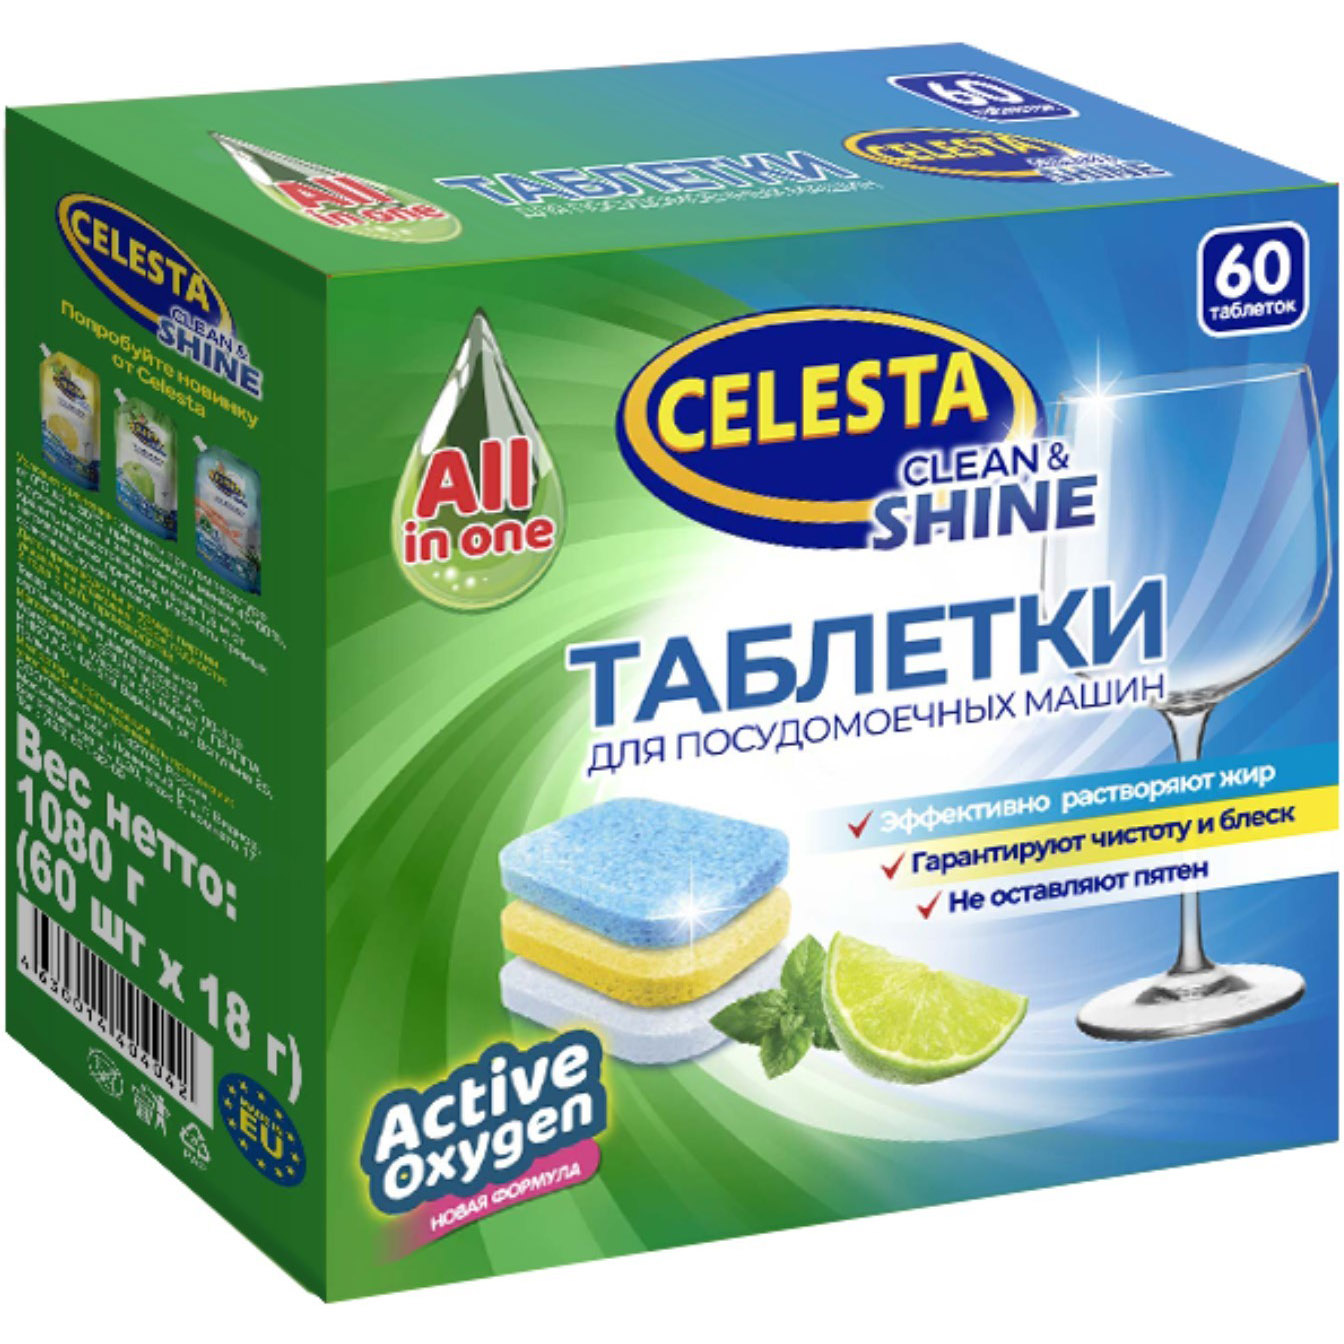 Таблетки для посудомоечных машин Celesta Clean & shine Трехслойные 60 шт стартовый набор для посудомоечных машин topperr 3304 таблетки ополаскиватель соль